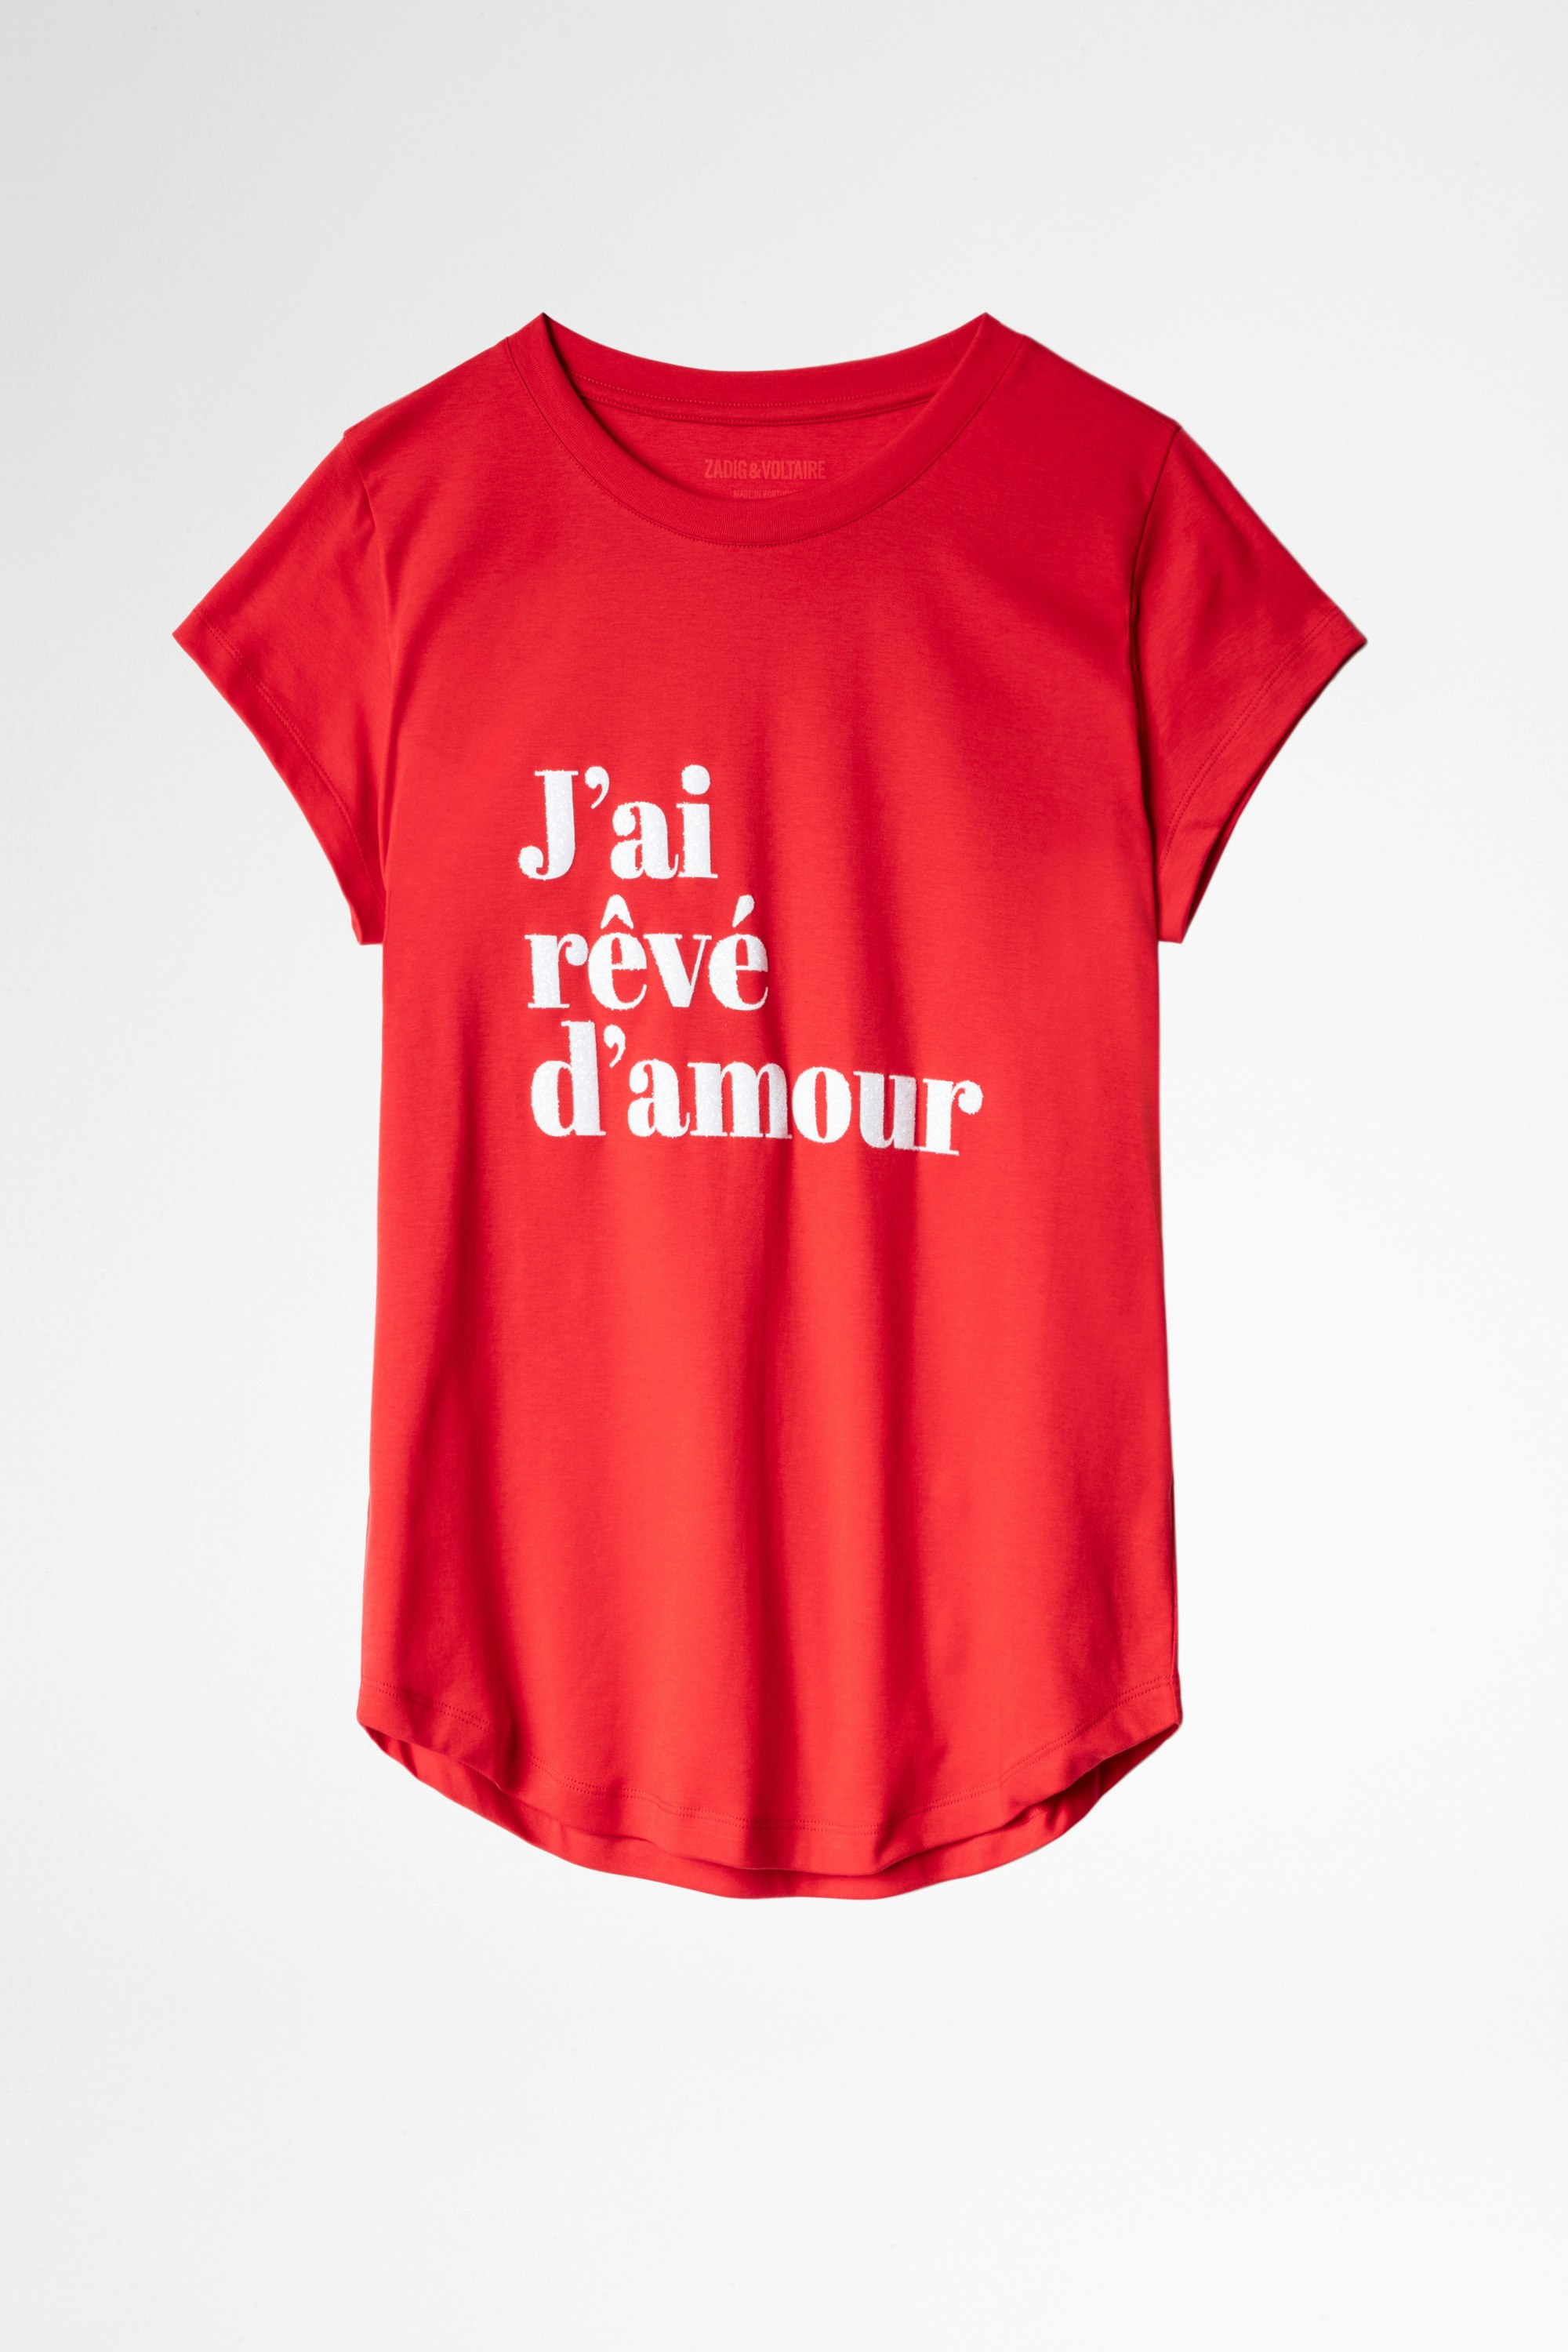 Woop T-shirt Women’s red ‘J'ai rêvé d'amour’ T-shirt